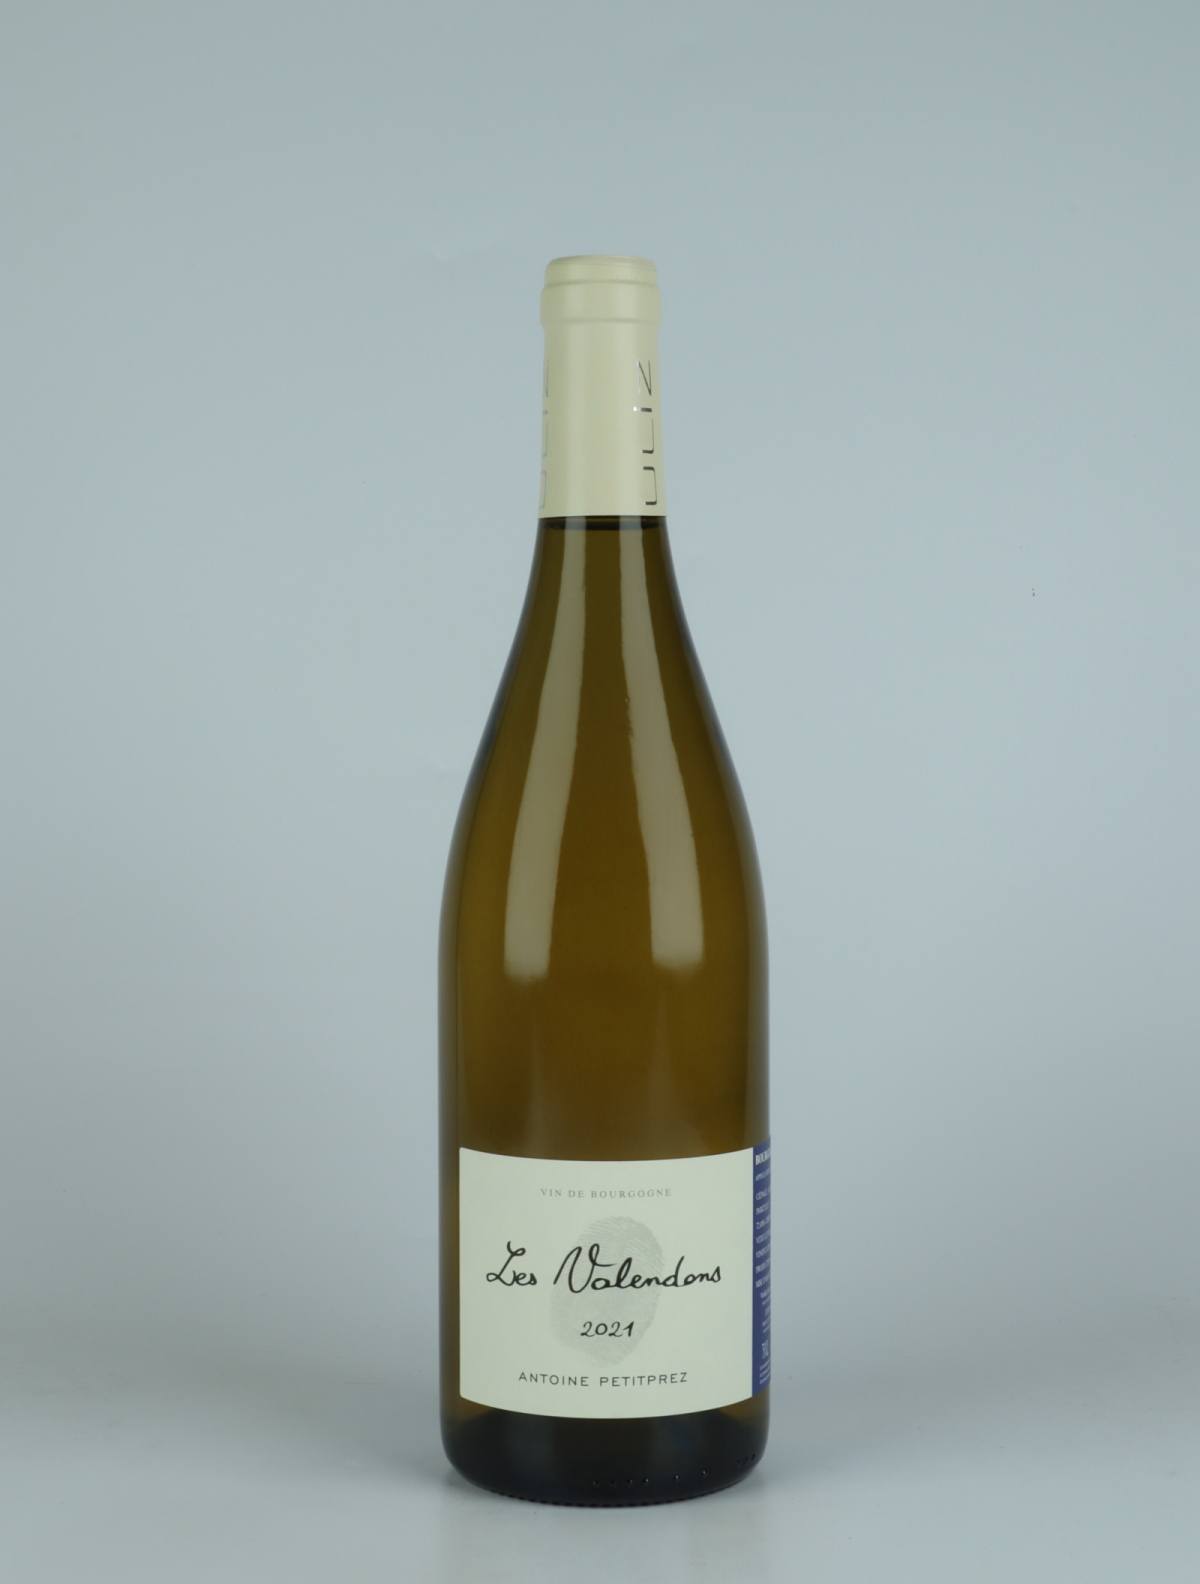 En flaske 2021 Bourgogne Aligoté - Les Valendons Hvidvin fra Antoine Petitprez, Bourgogne i Frankrig